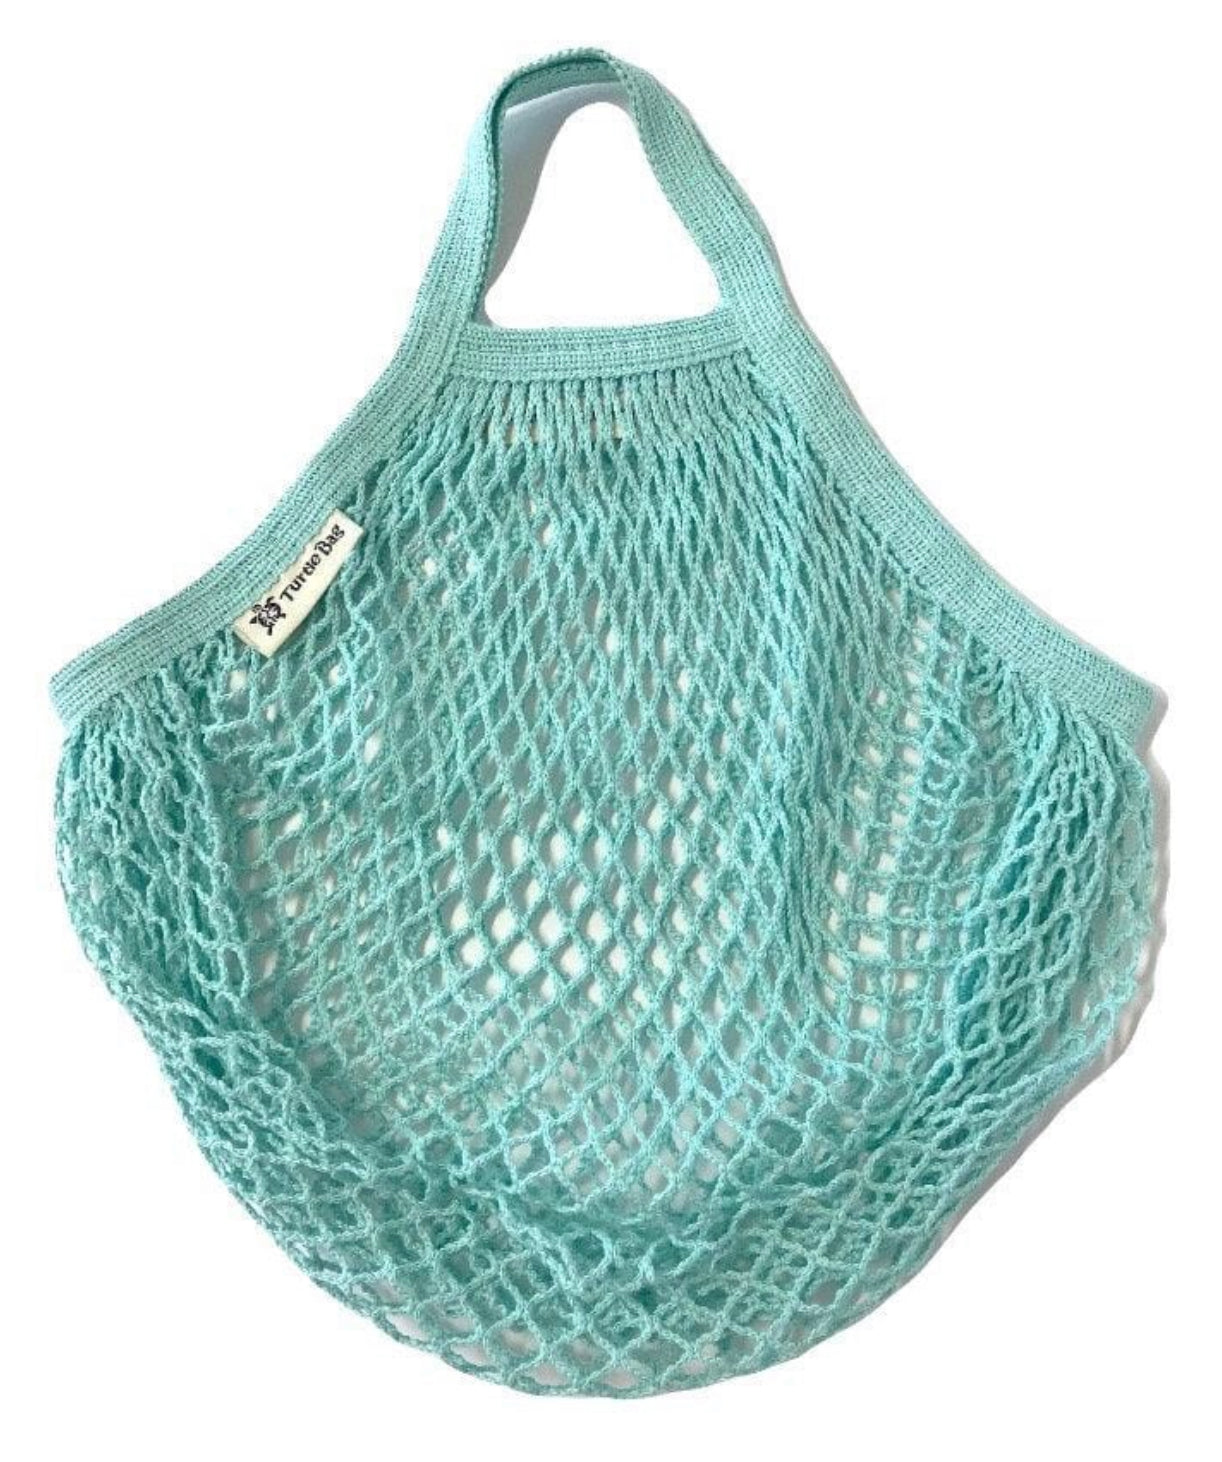 Turtle bag: short-handle